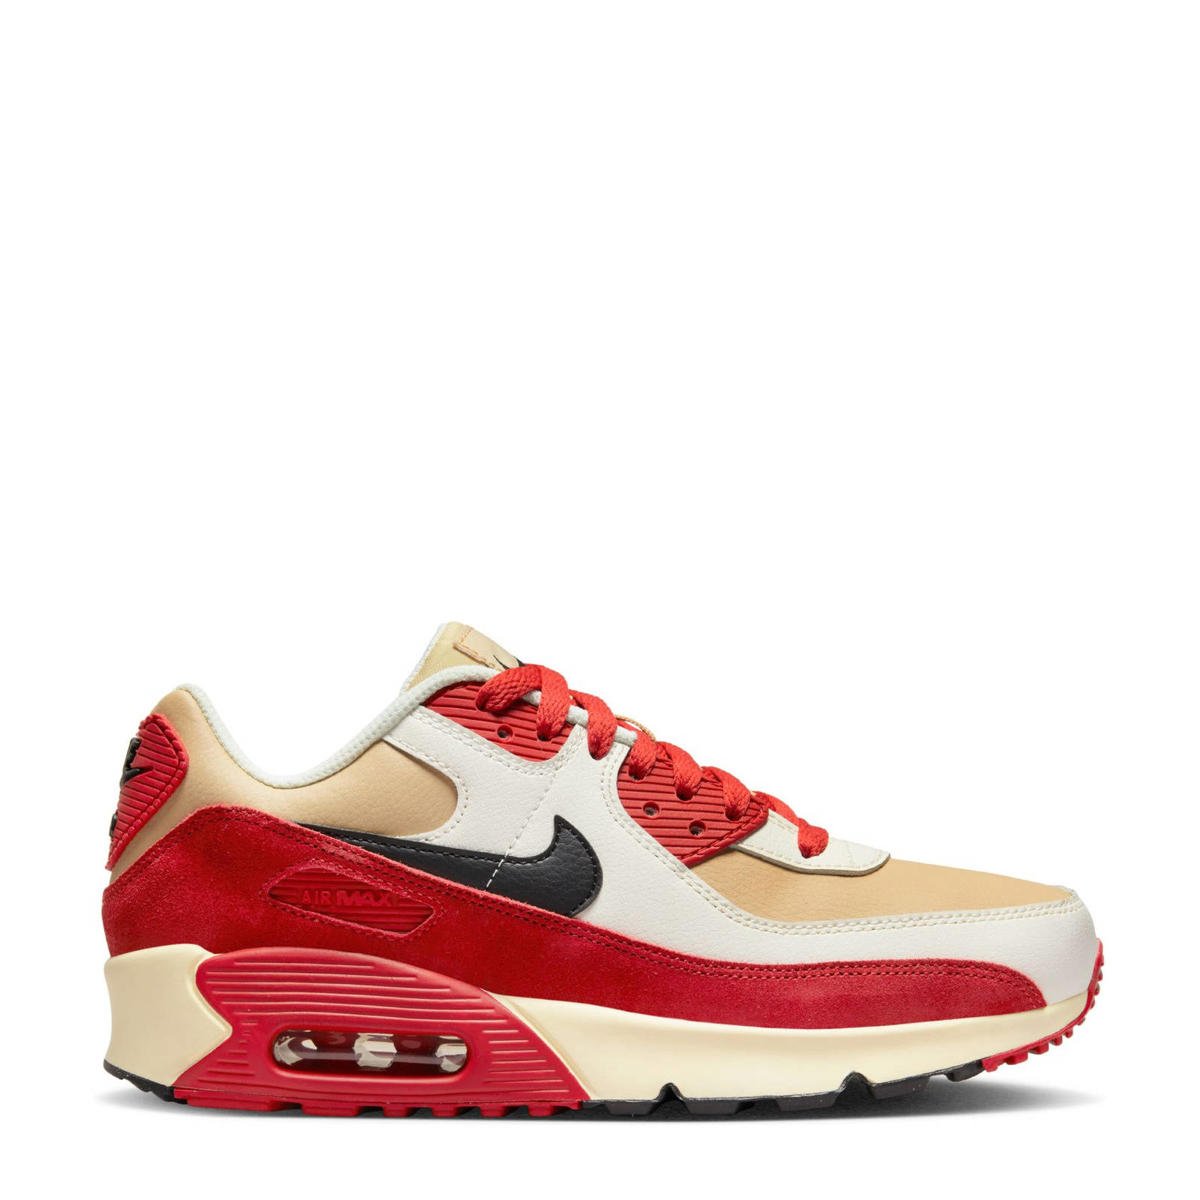 Koloniaal Reinig de vloer Verwaarlozing Nike Air Max 90 sneakers zand/rood/wit | wehkamp